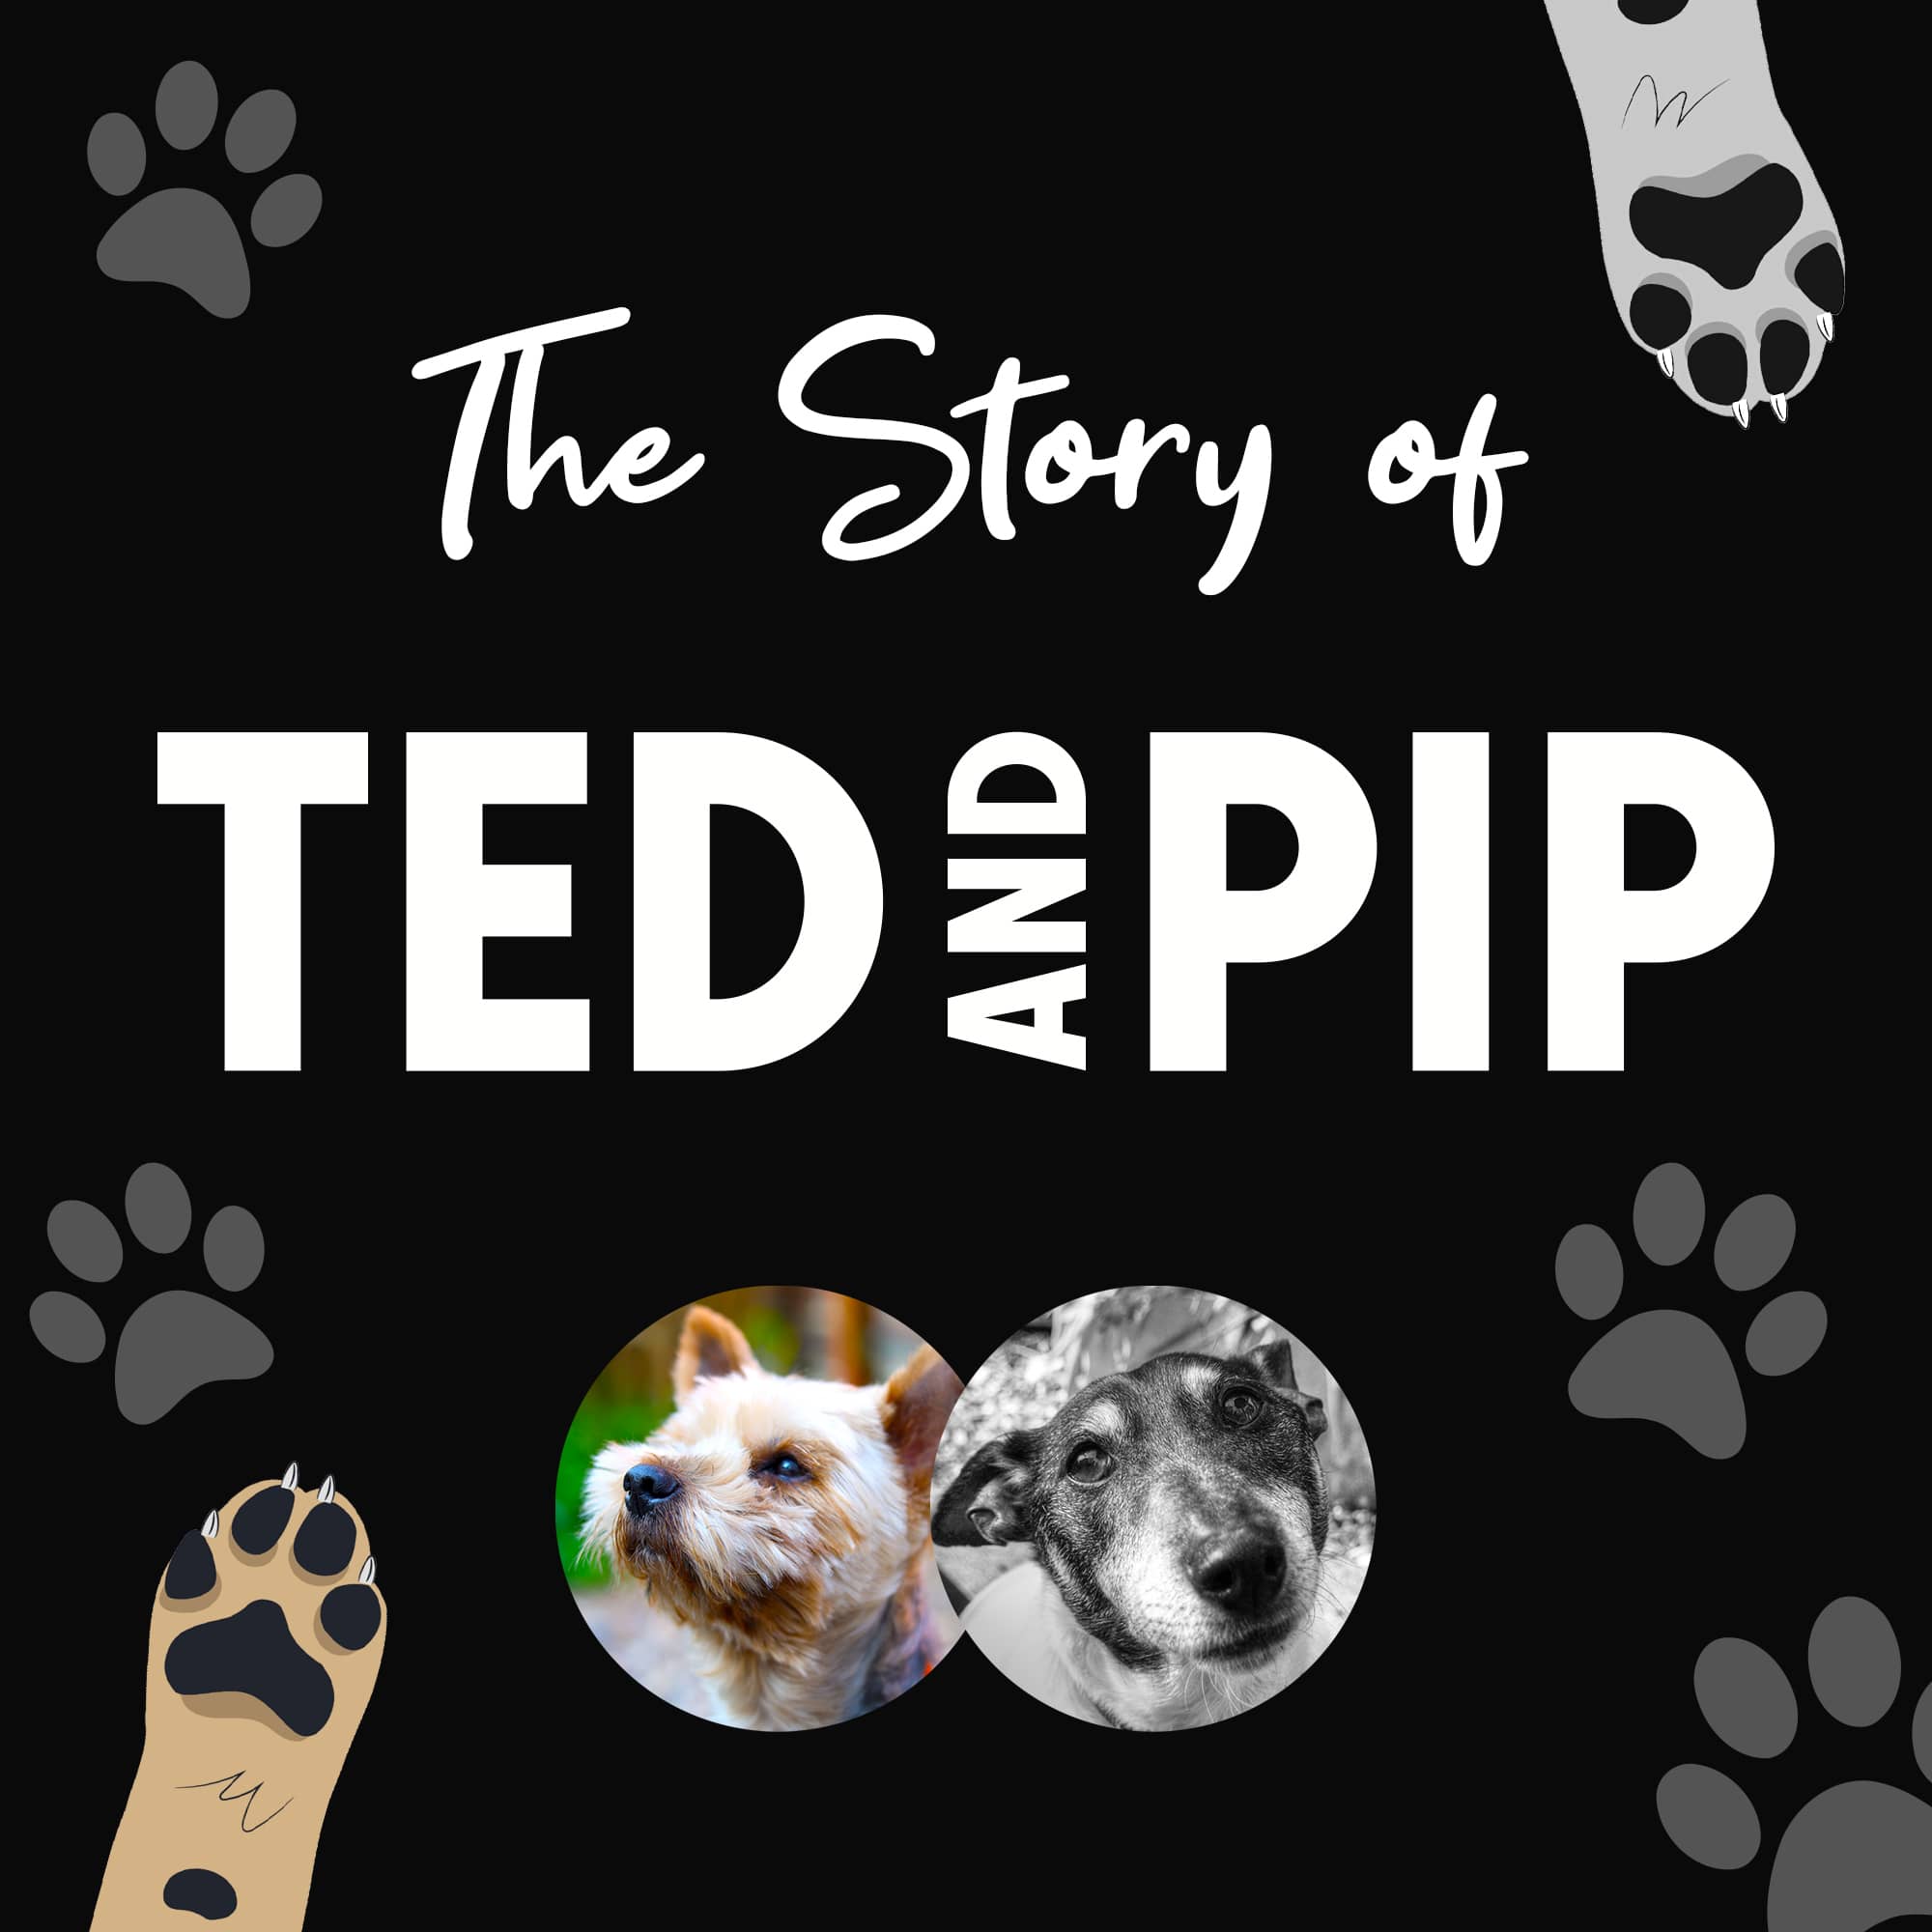 Ted & Pip - Stylish Dogwear